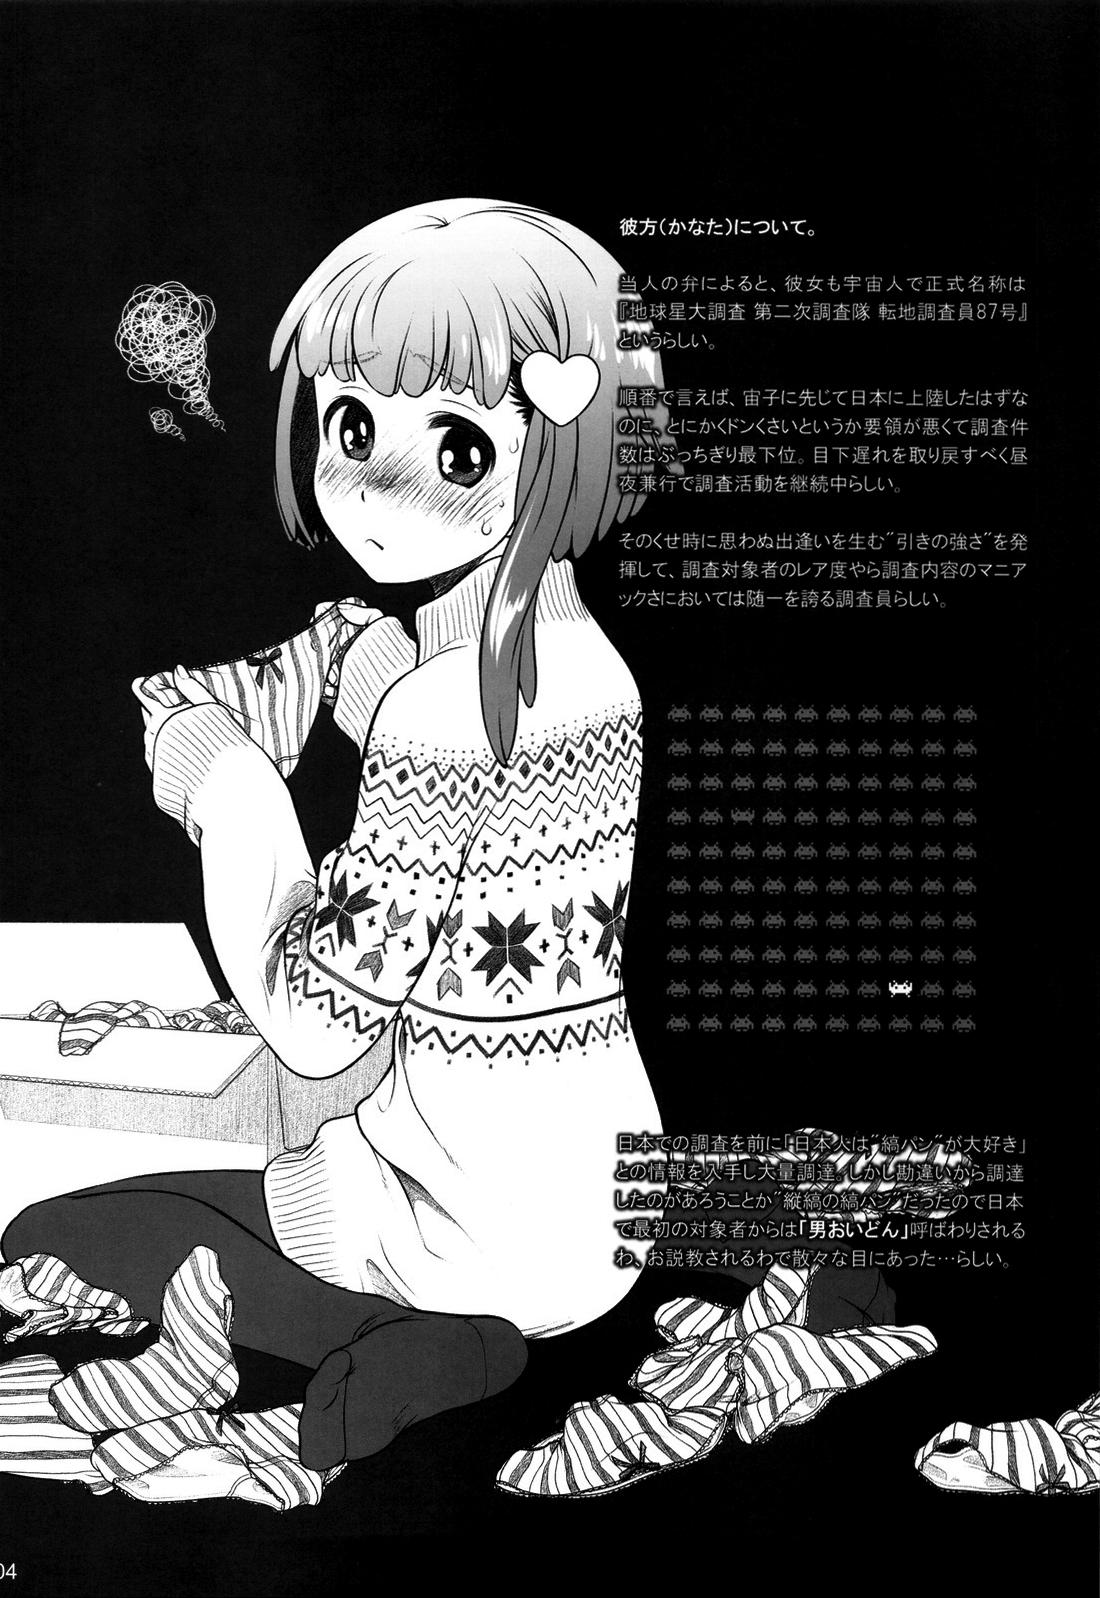 Cheat Sorako no Tabi 4 - Kanata no Tabi Pija - Page 3